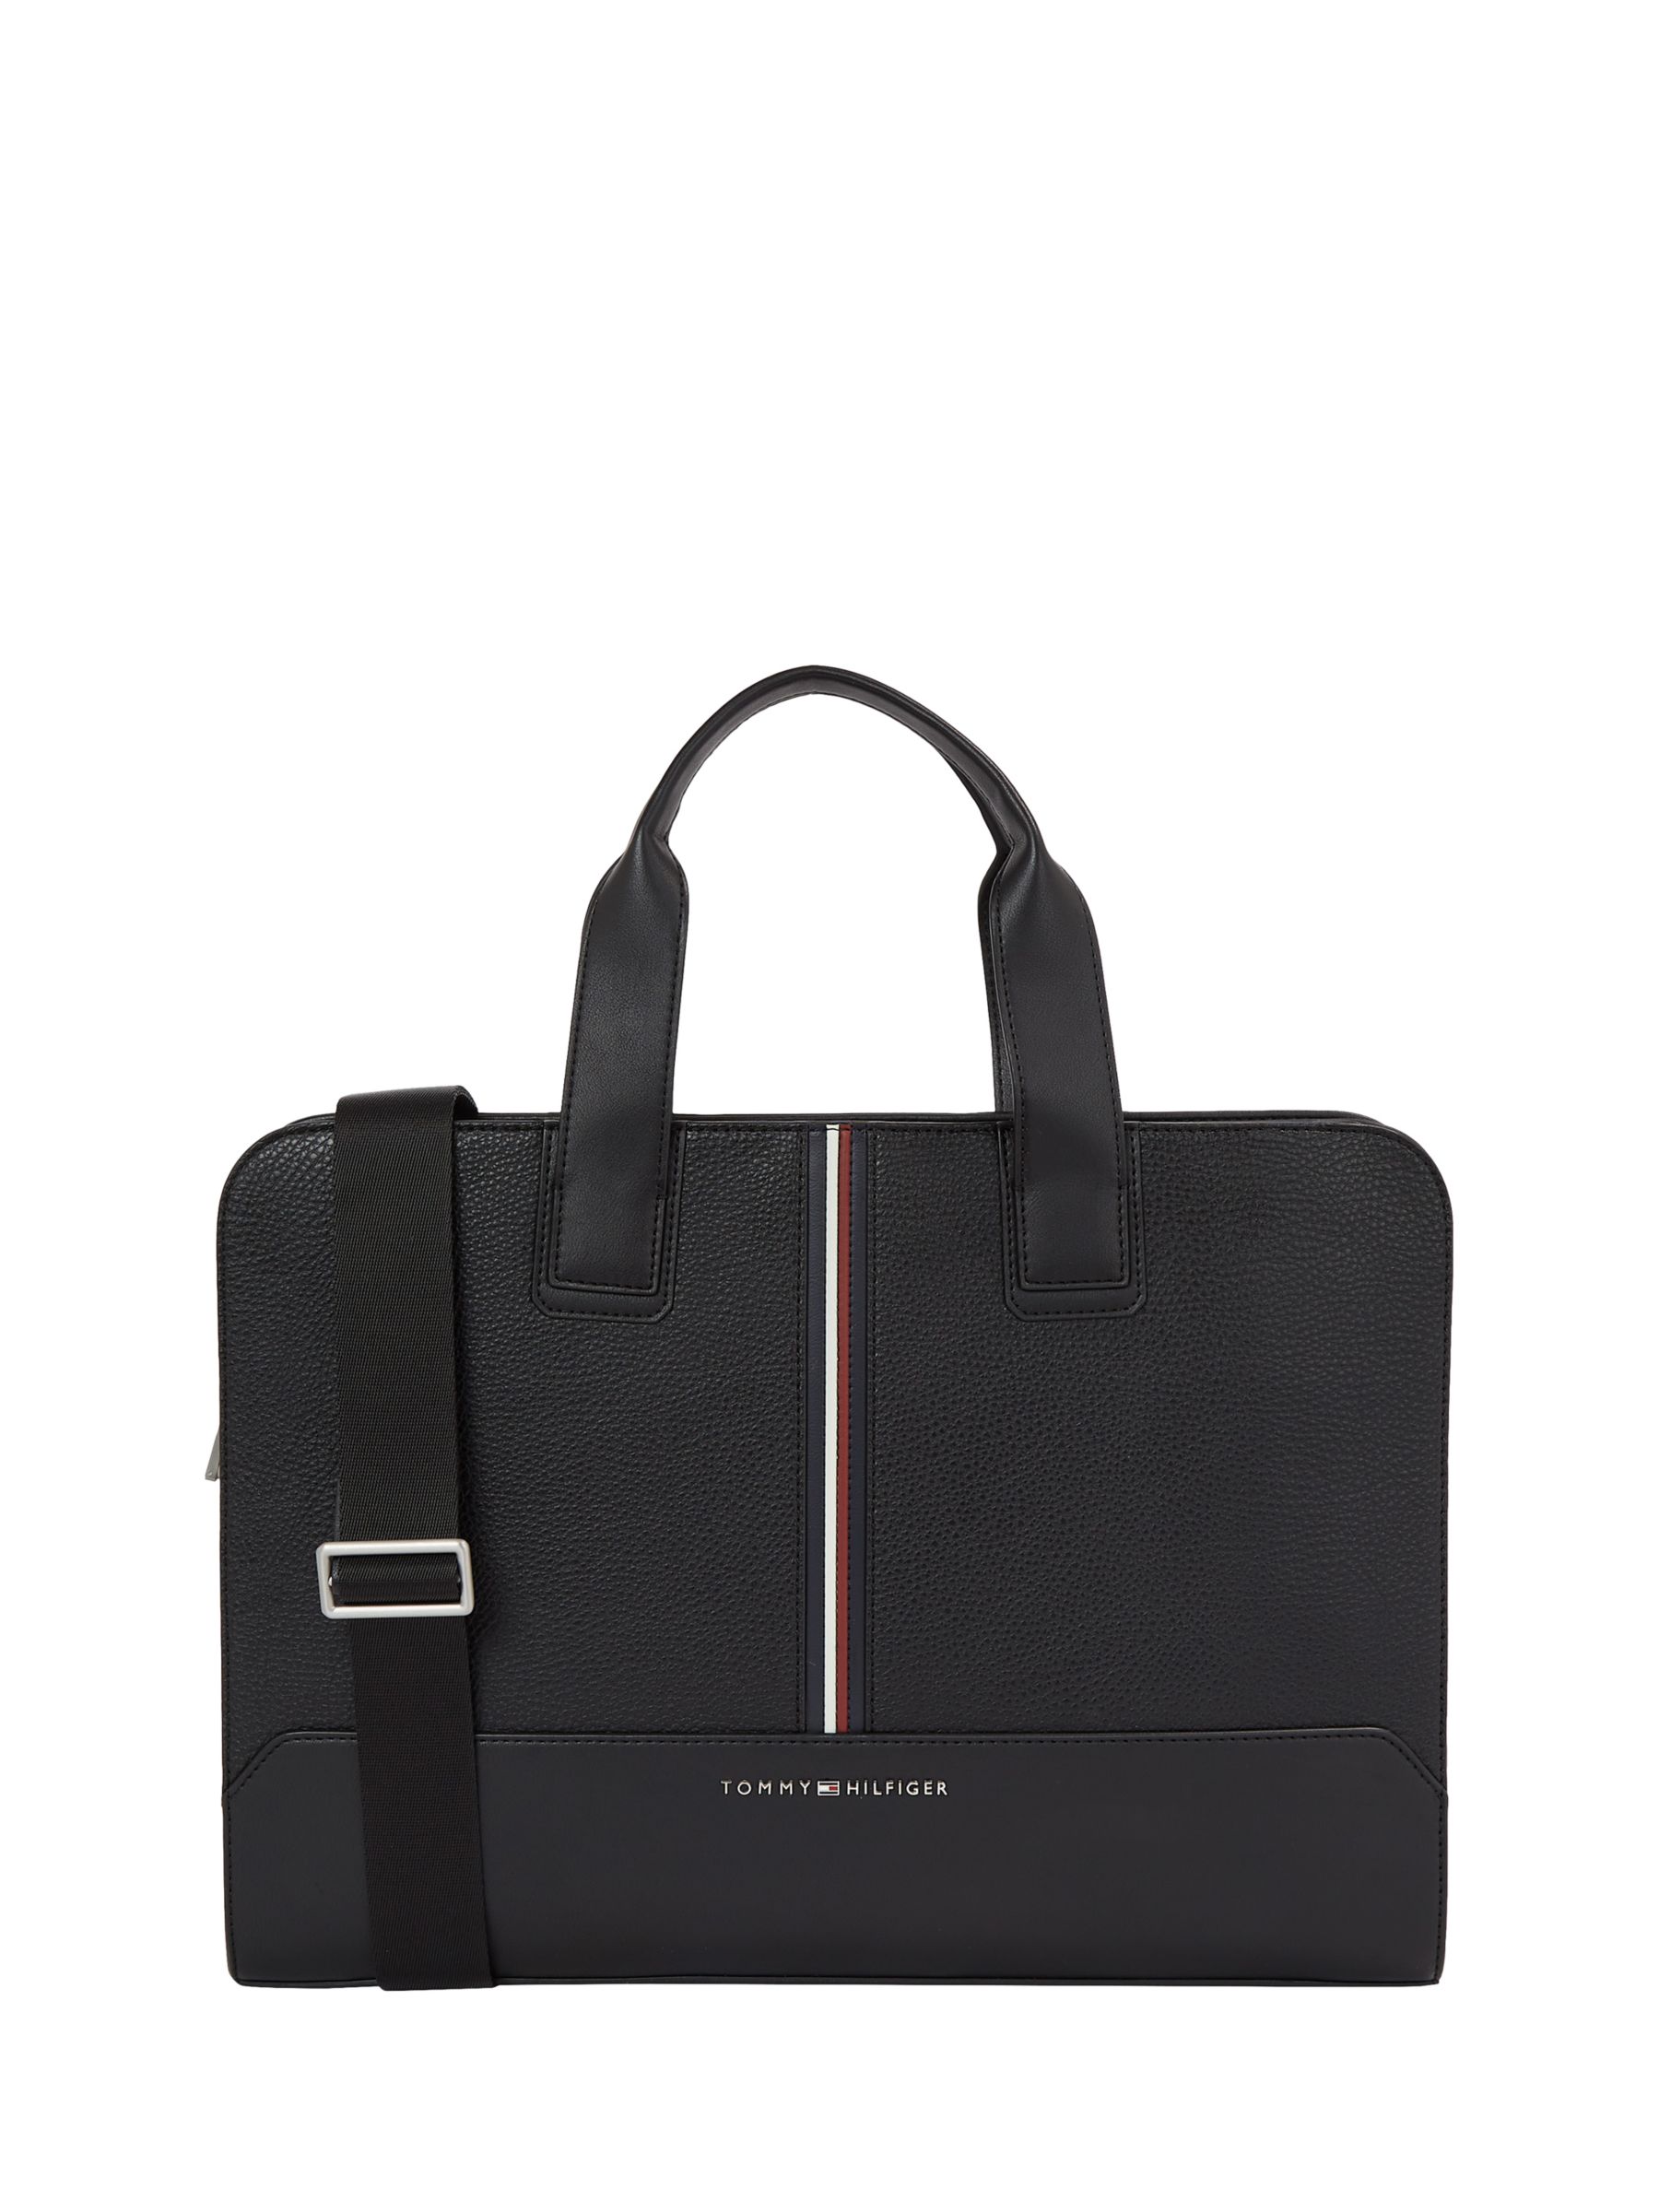 Tommy Hilfiger Laptop Bag, Black, One Size